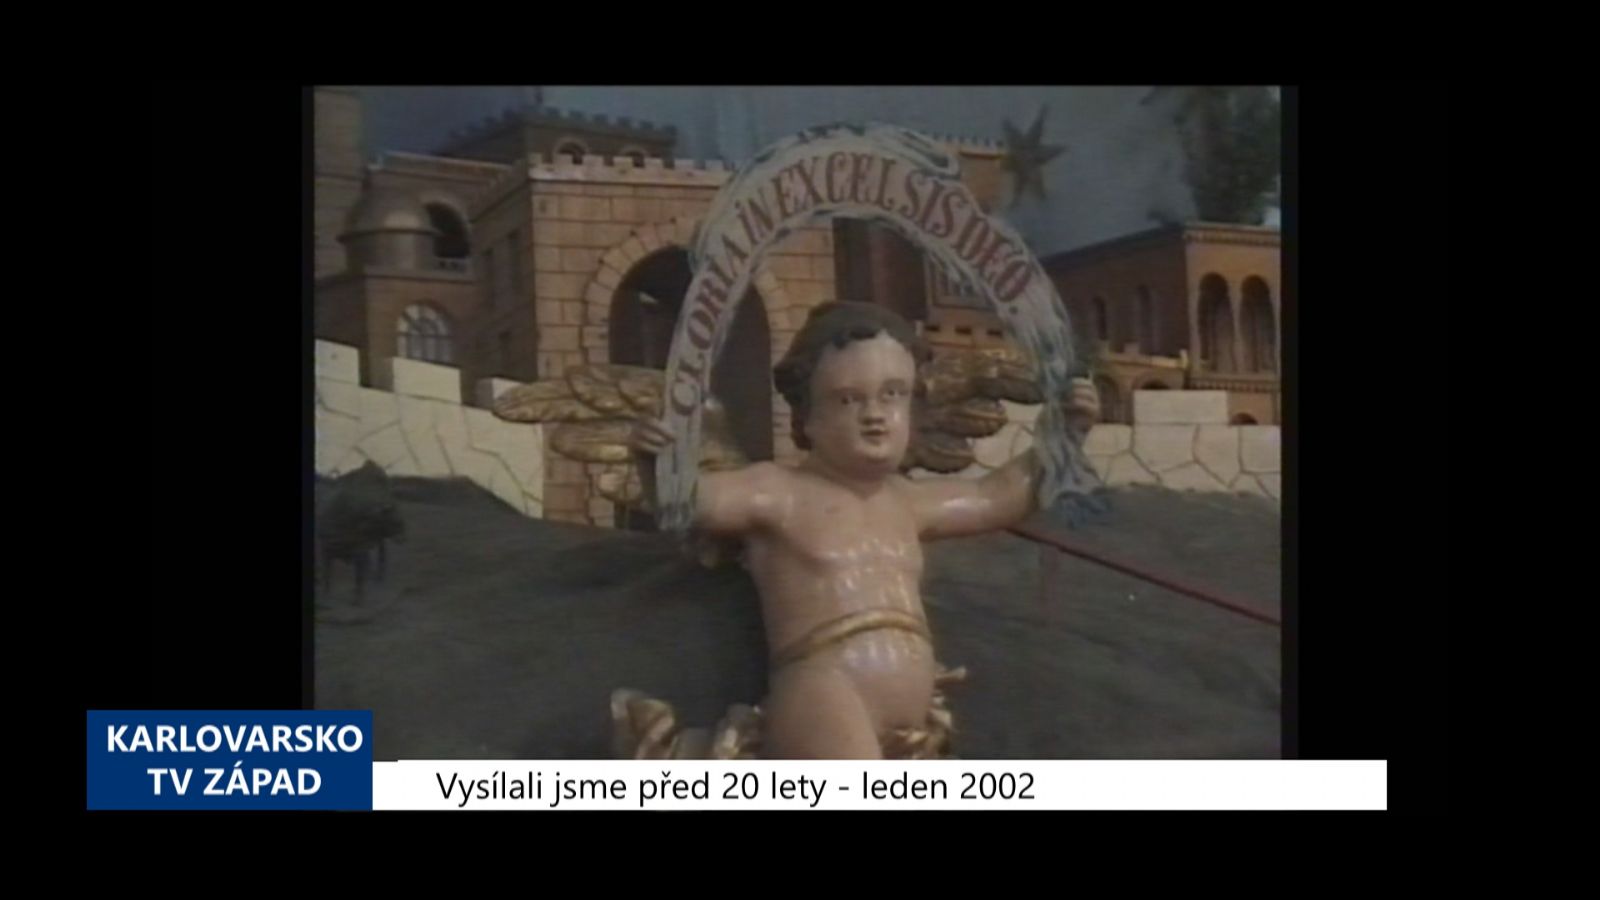 2002 – Kynšperk: Bude místní betlém kulturní památkou? (TV Západ)